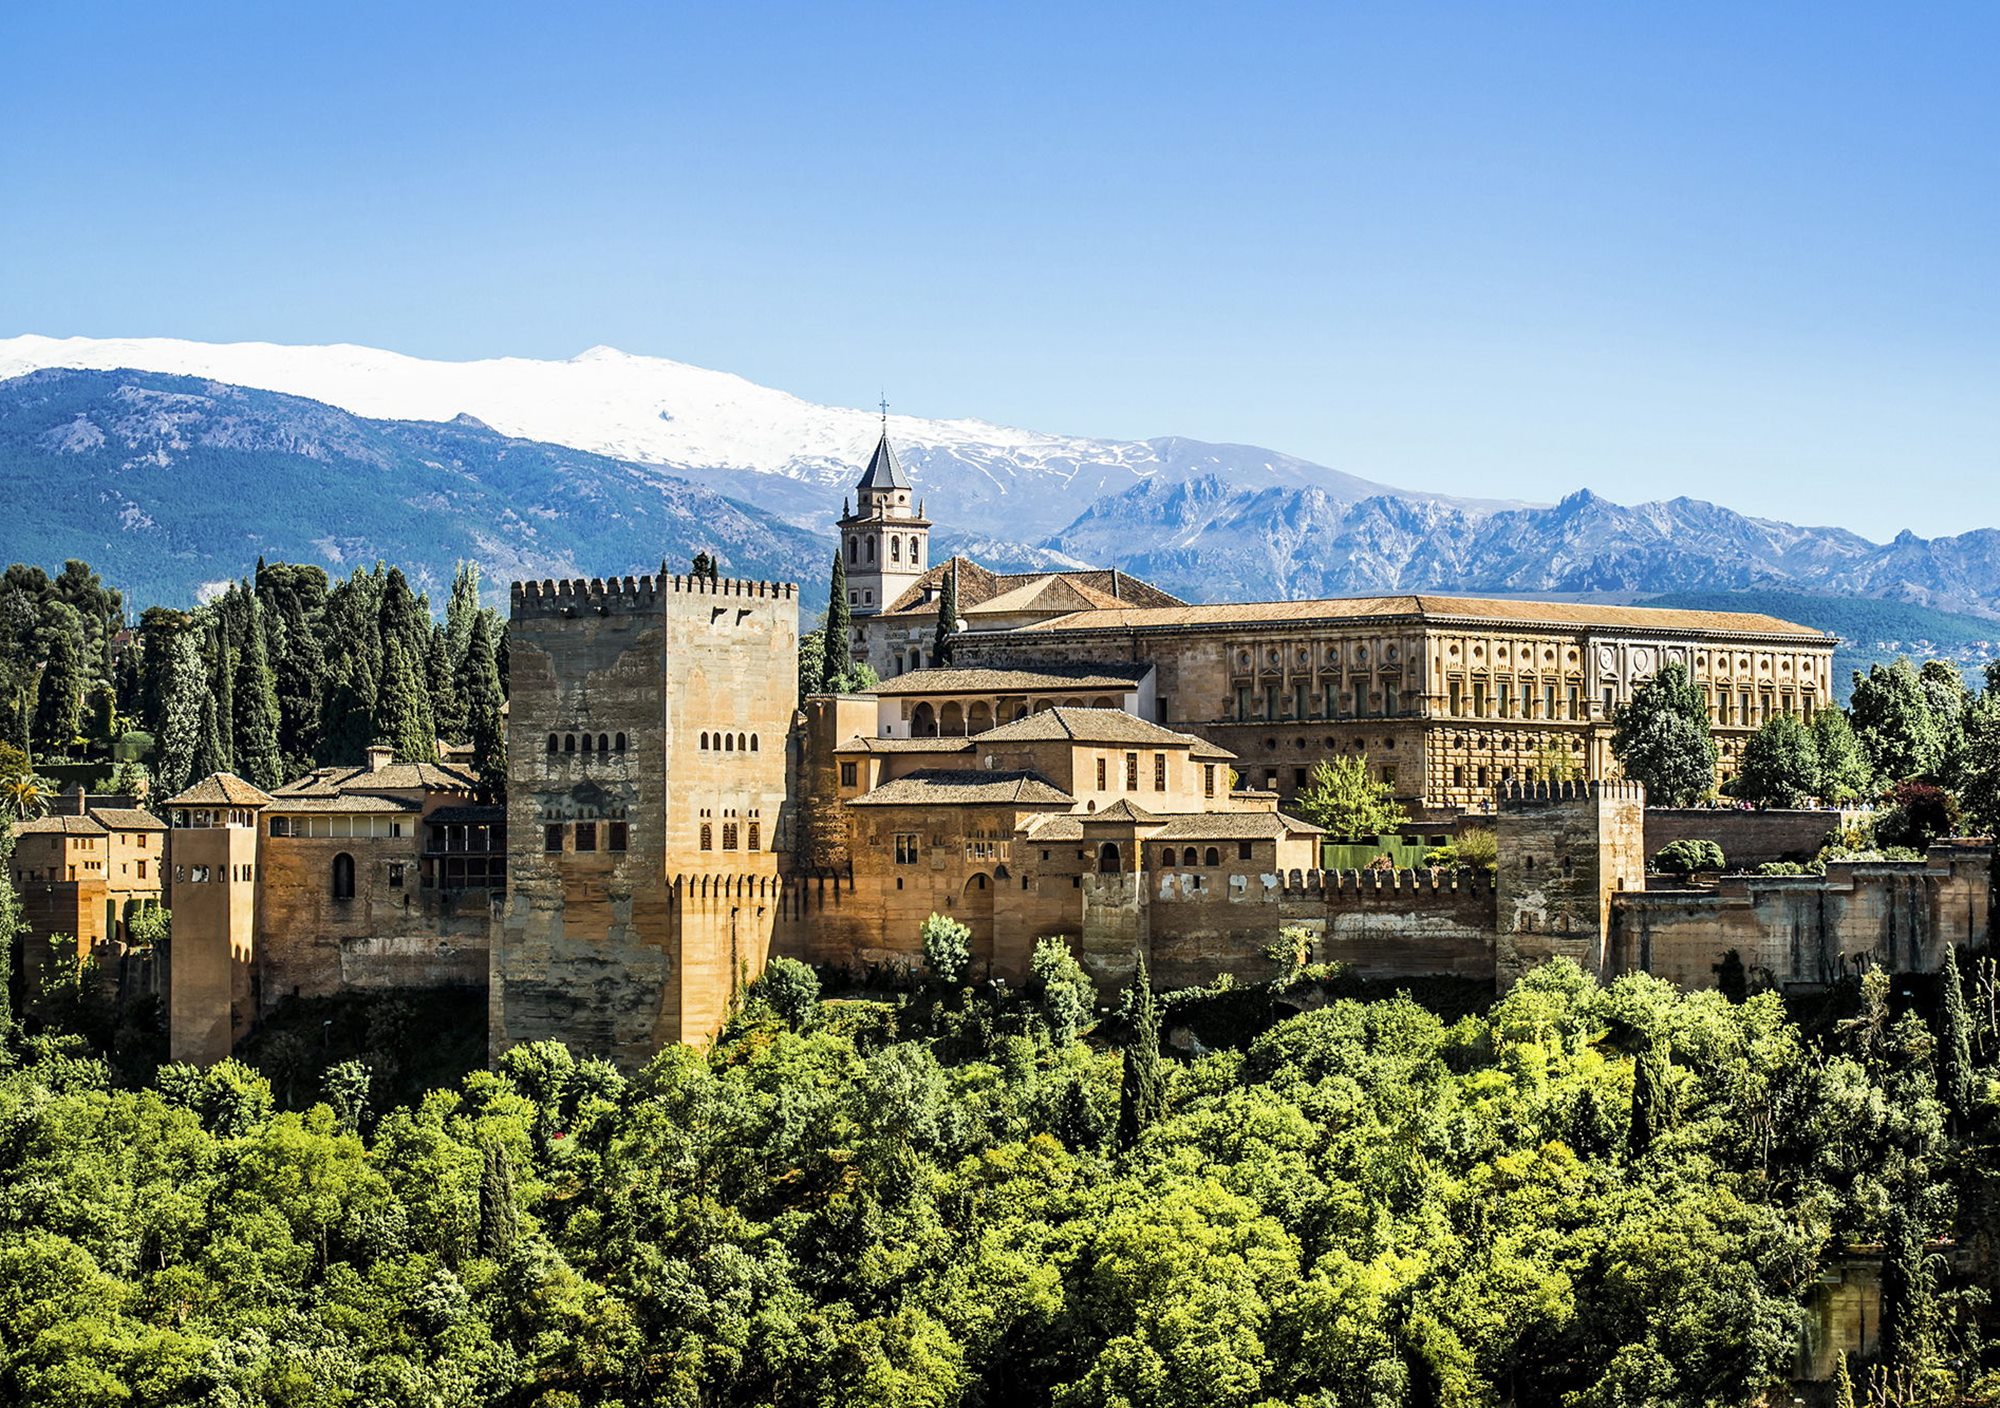 Visita guiada semiprivada tour guiado a la Alhambra y Granada con trasalados transporte tickets entradas palacios nazaries desde la Costa del Sol Málaga Torremolinos Benalmádena Marbella Fuengirola Mijas Elviria Puerto Banús Estepona